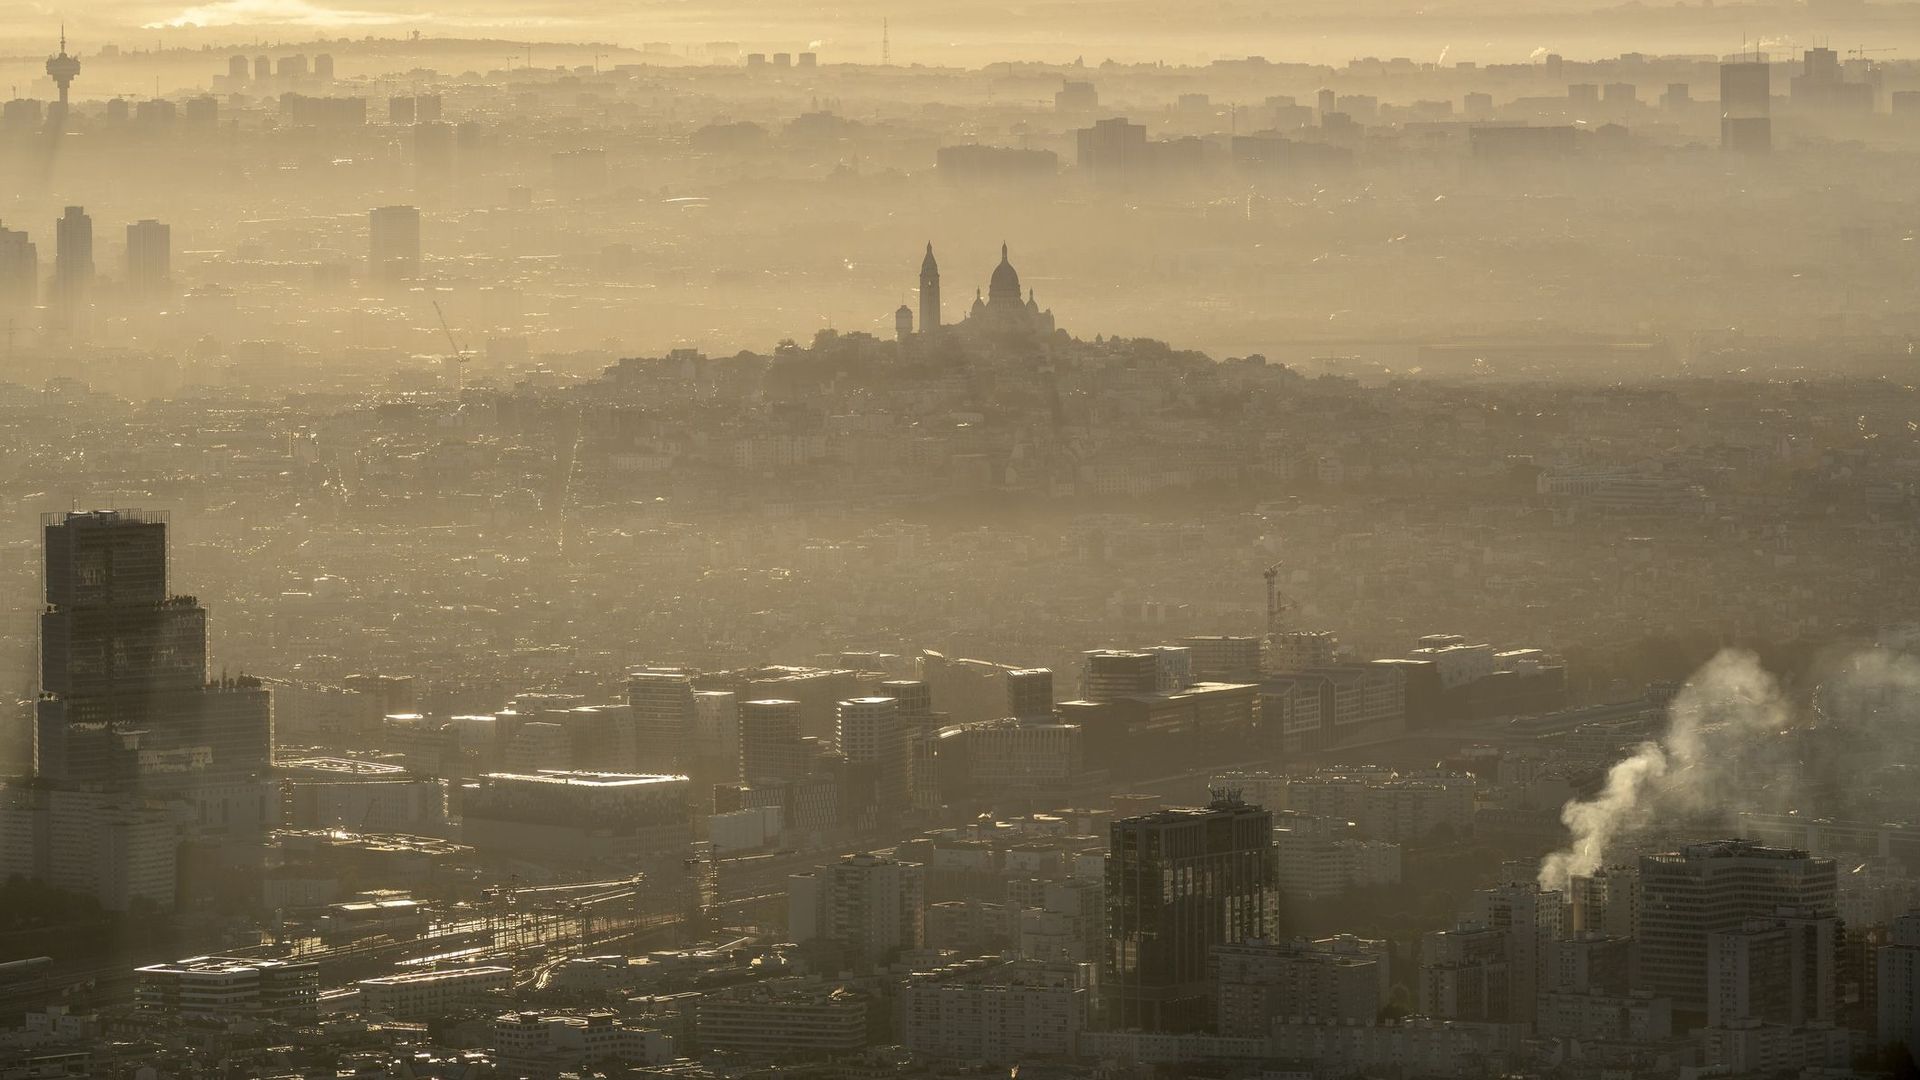 la-pollution-de-l-air-coute-166-milliards-d-euros-par-an-en-europe-rapport